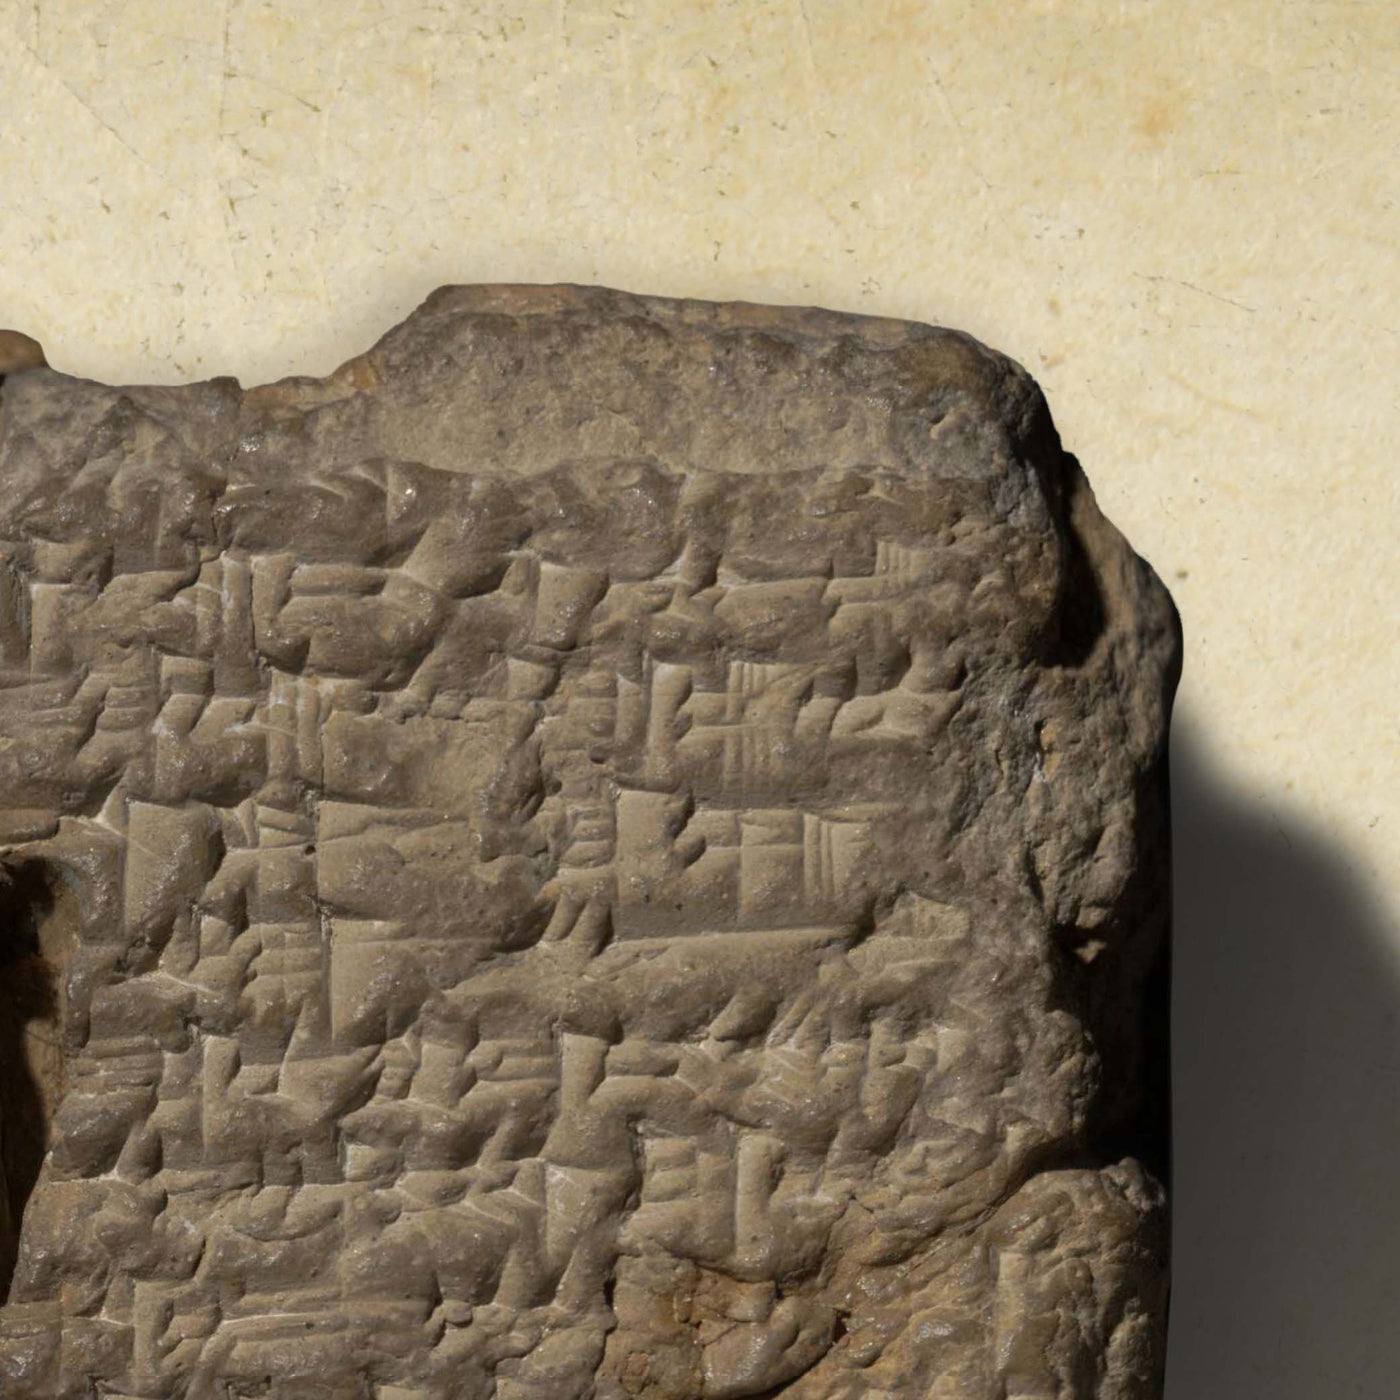 Antiguo mapa temático del mundo antiguo, -600: Babilonia, río Nilo, mar Mediterráneo, río Ganges, Himalaya